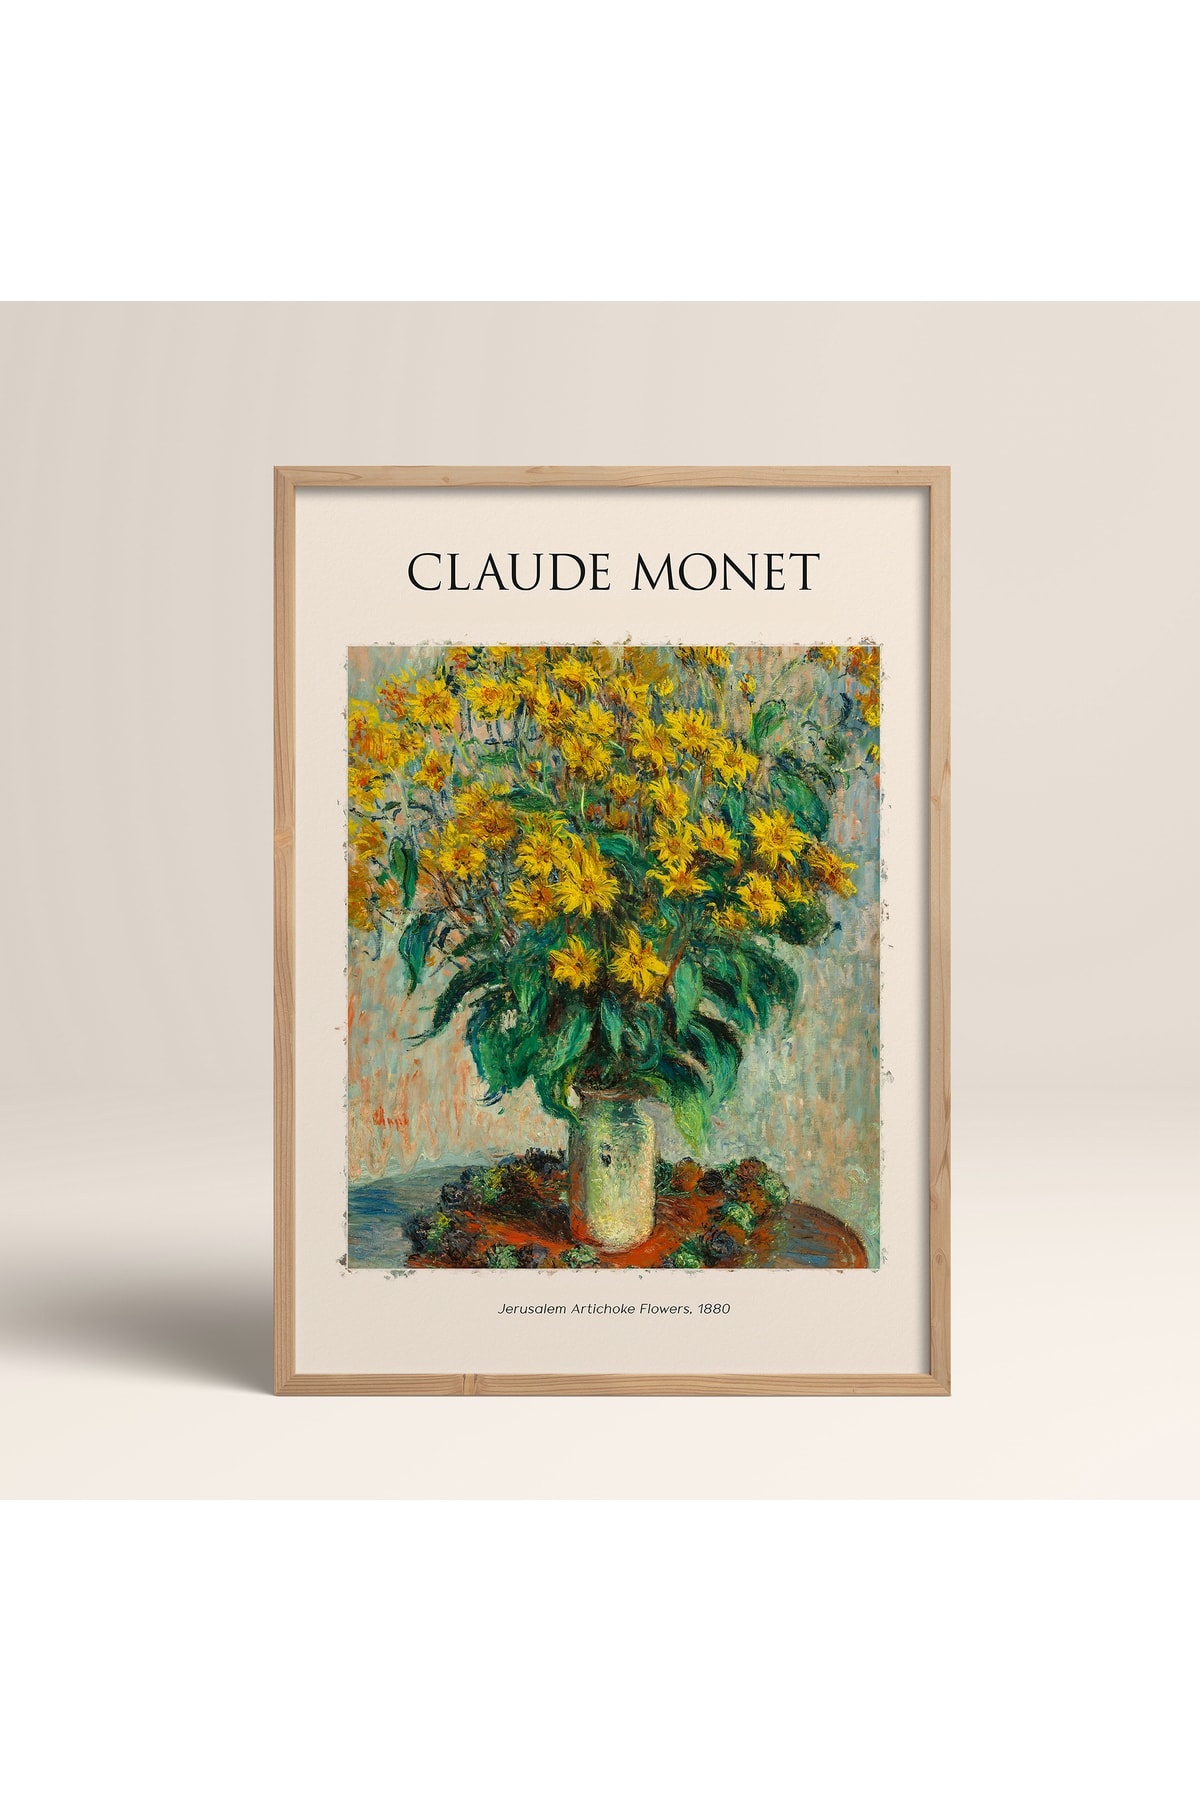 HOMEPACK Ahşap Çerçeveli Claude Monet Jerusalem Artichoke Flowers Art Tablo